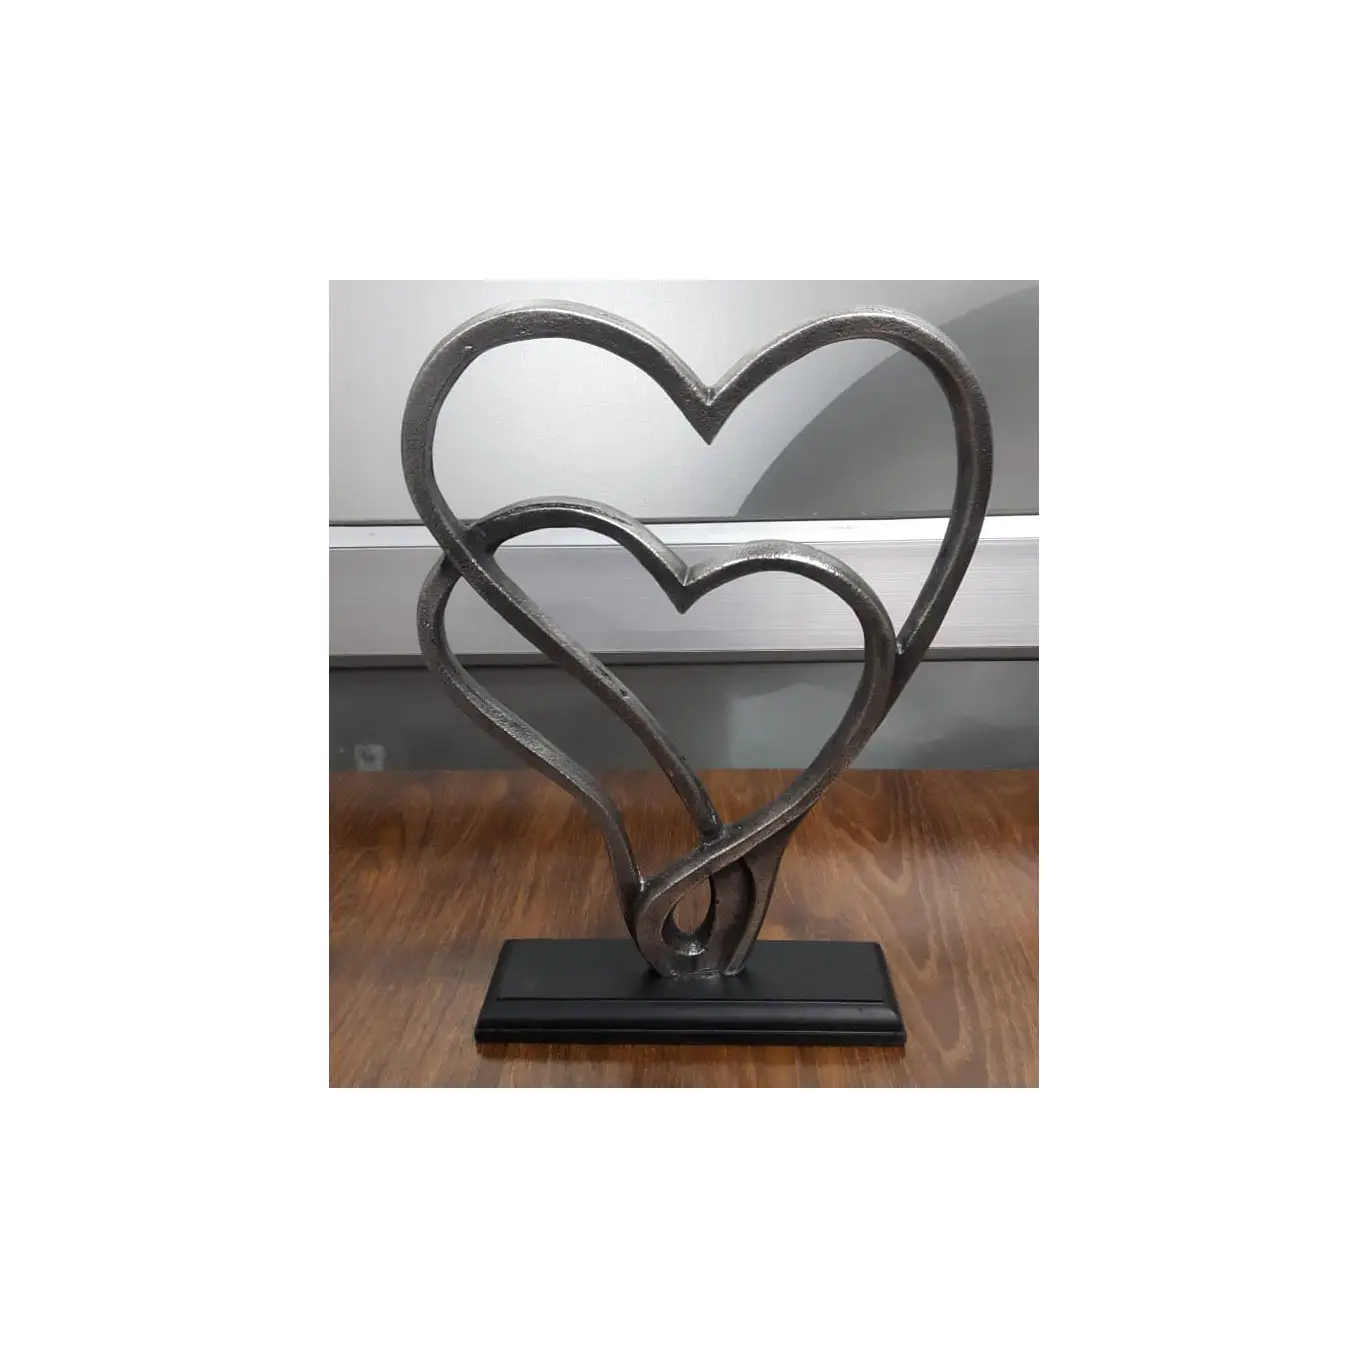 نحت من الألومنيوم عالي الجودة على شكل قلب نحت رمادي بتصميم راقي يستخدم كديكور للمكاتب